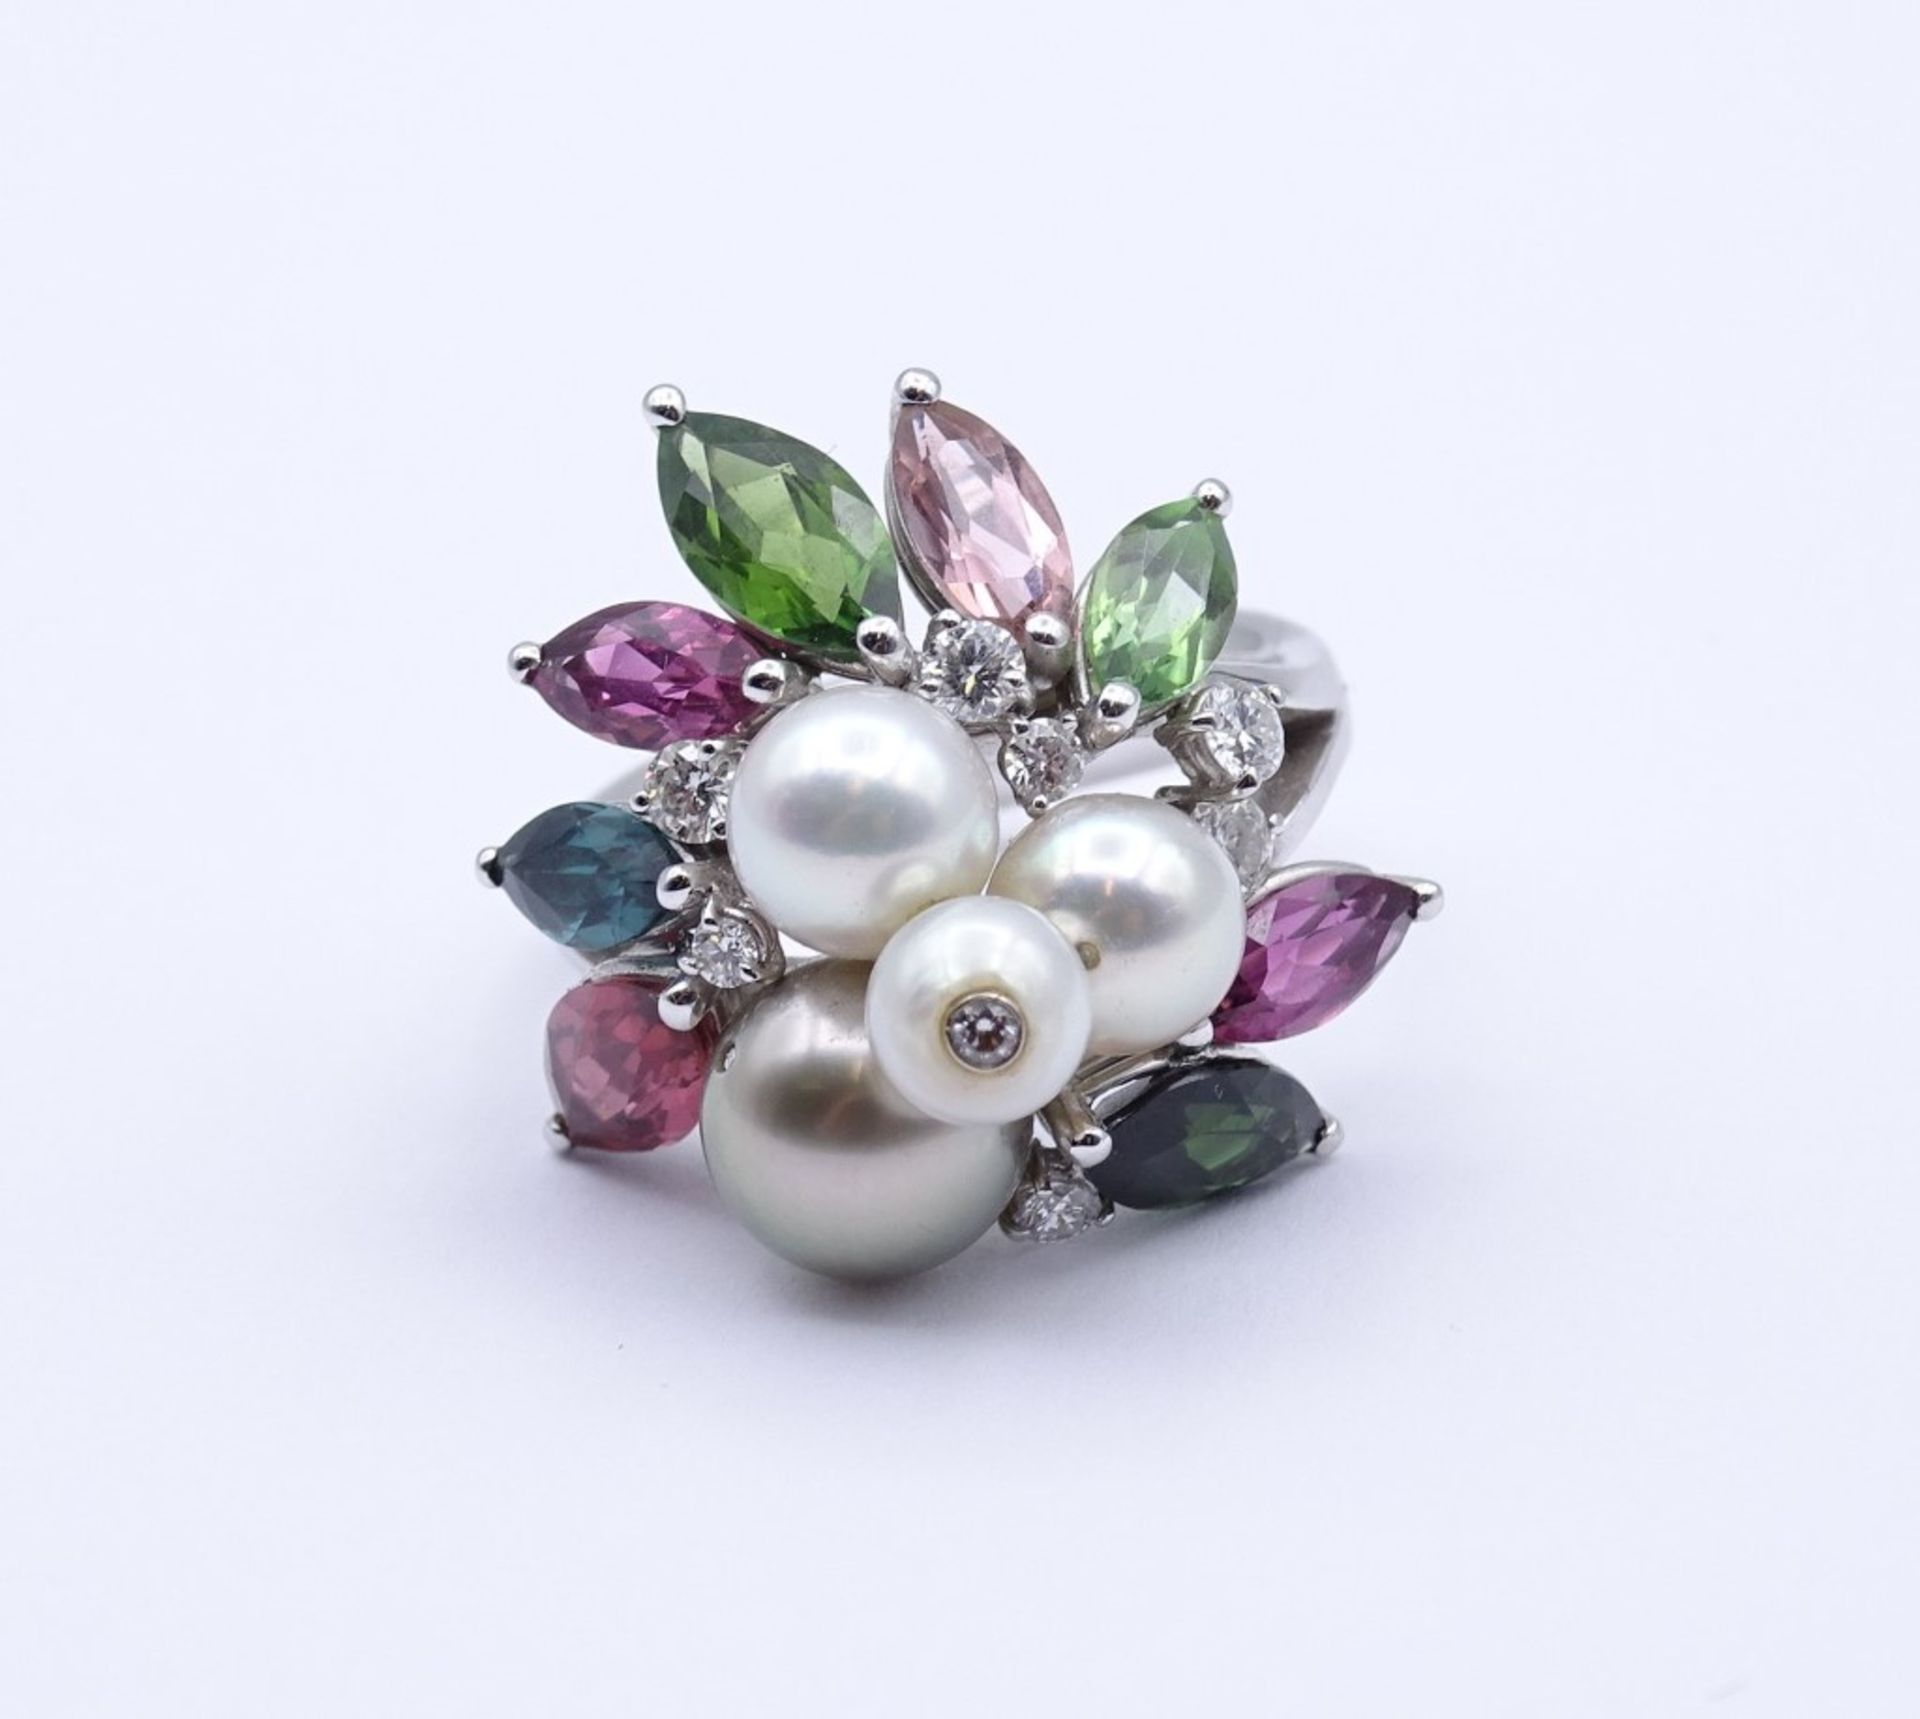 Prachtvoller Edelstein Ring WG 0.750 mit Brillanten,Perlen und Multicolor Edelsteinen, 16,10 g., RG